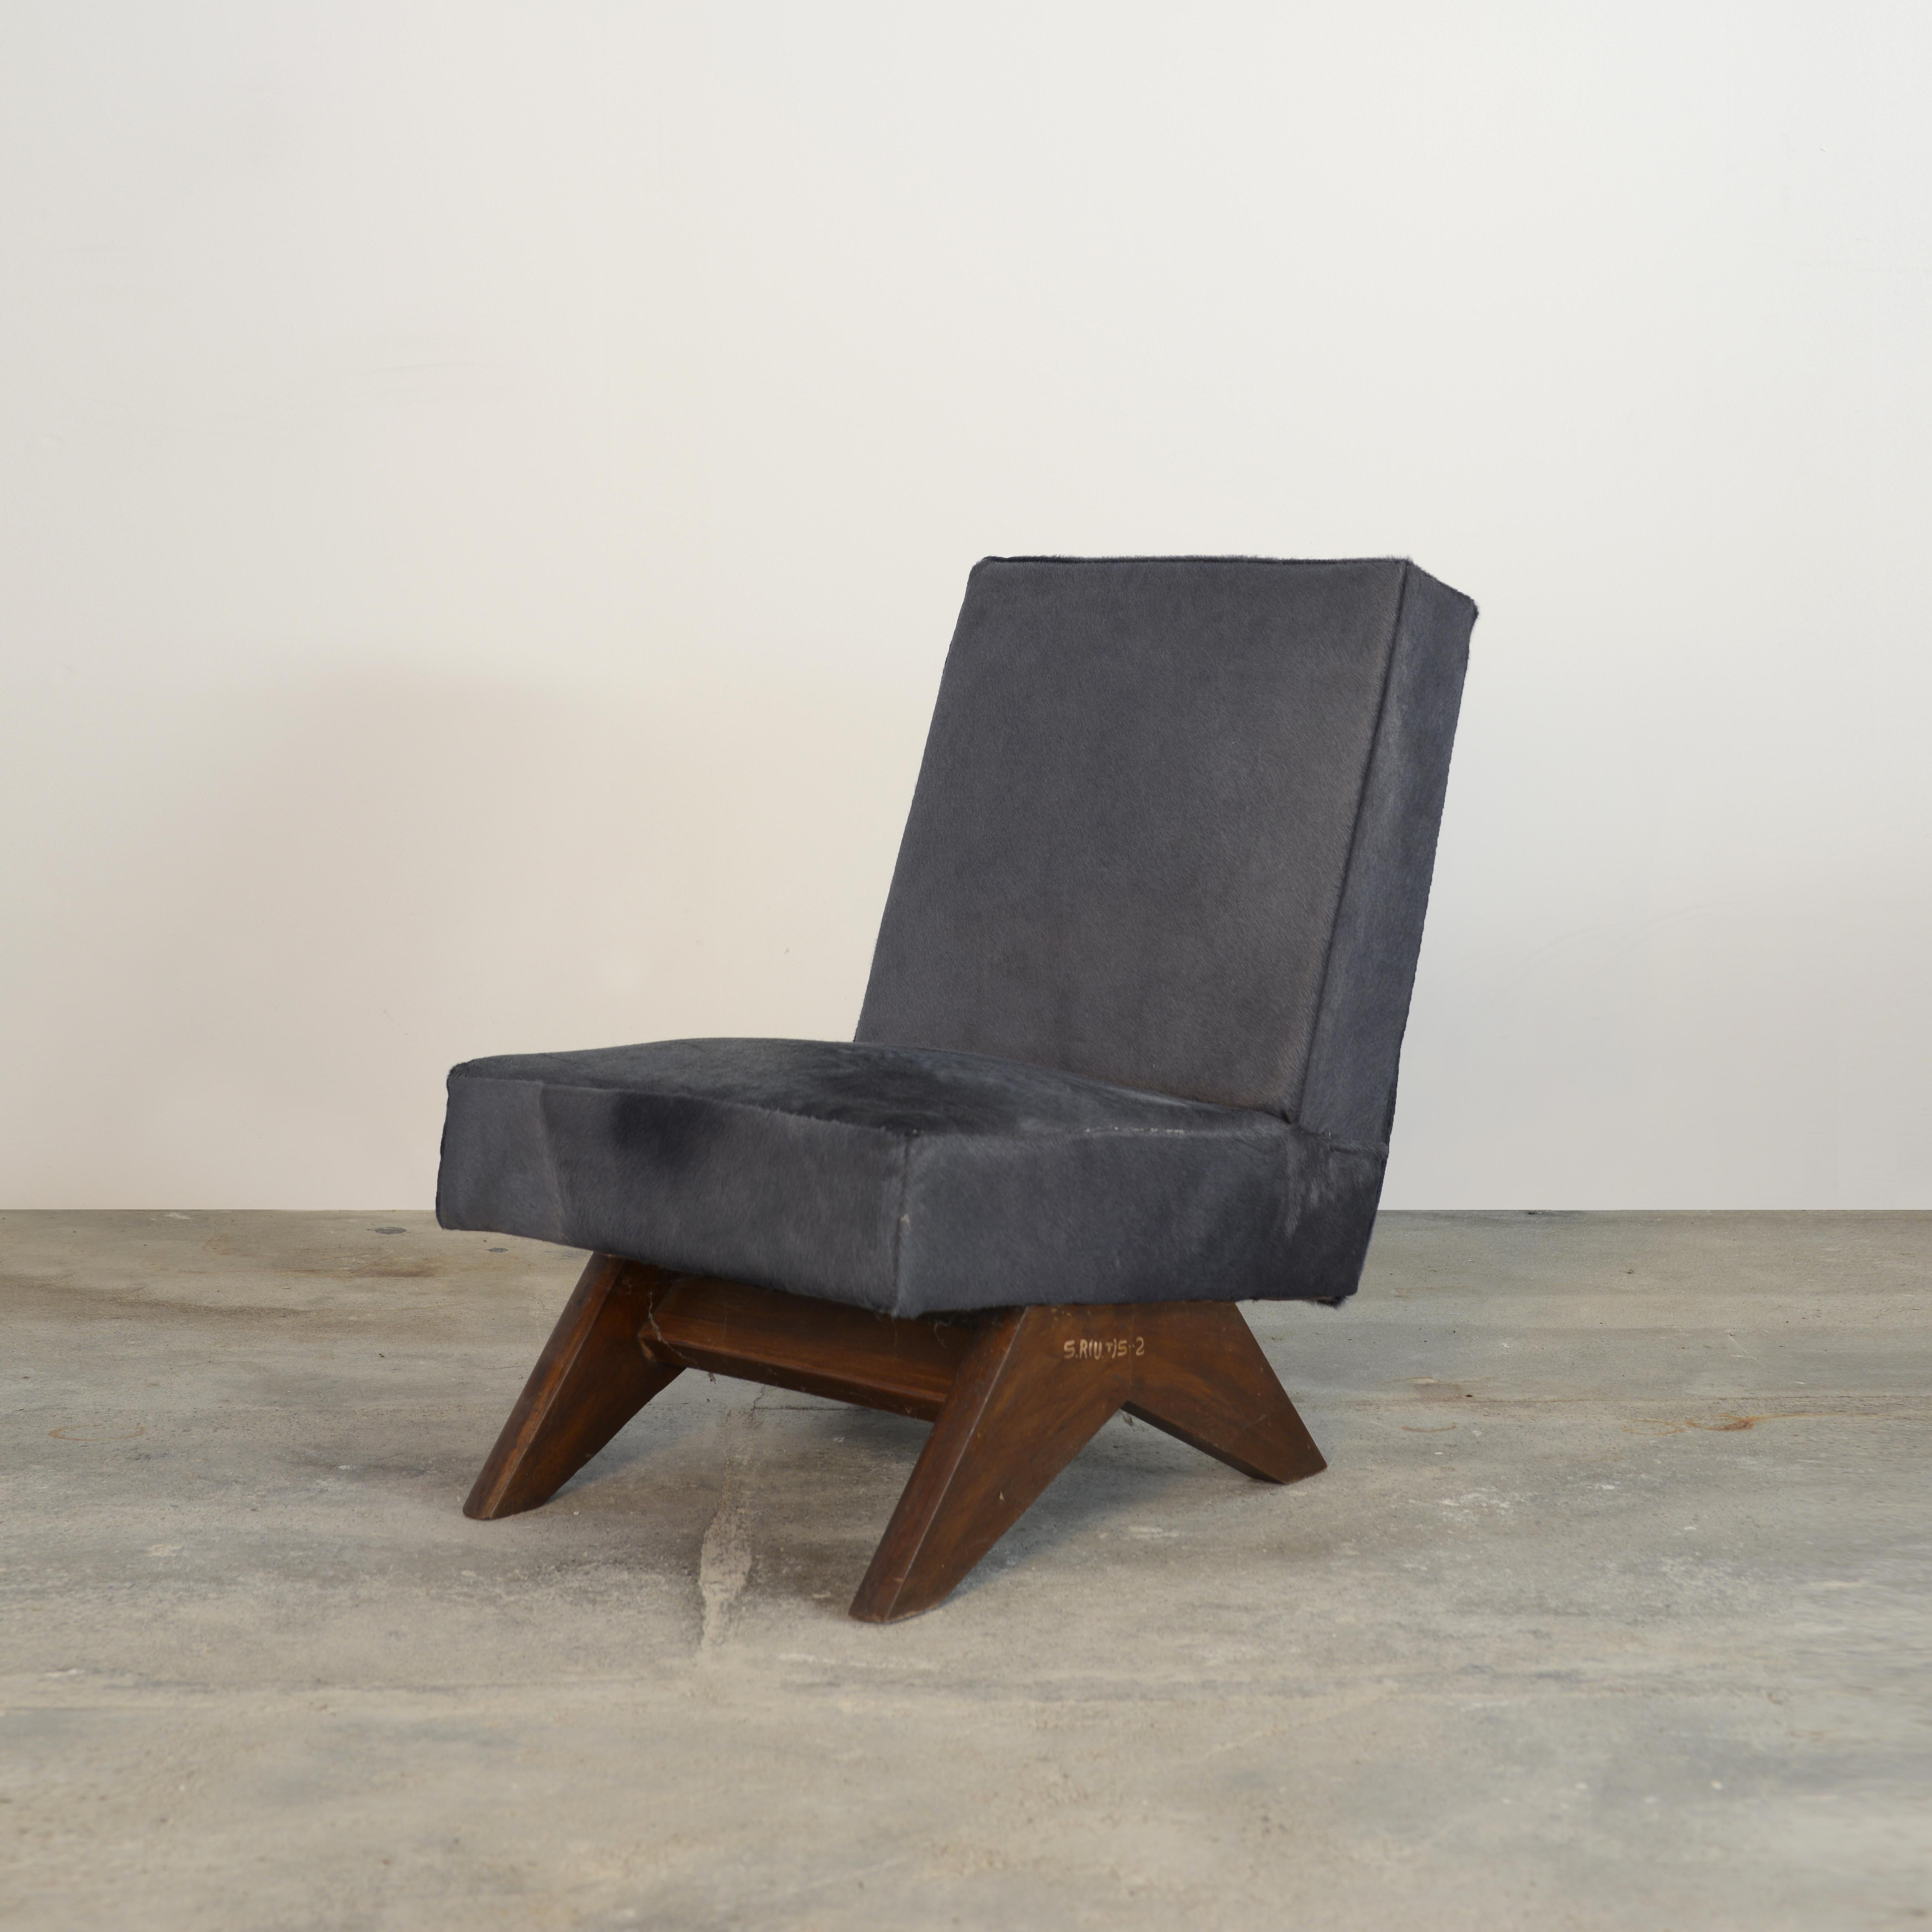 Dieses ikonische Möbelstück mit seinem charakteristischen A-förmigen Profil ist ein seltener Klassiker der Geschichte. Durch seine raffinierten Proportionen und seine elegante Form repräsentiert der Stuhl die zeitlose Denkweise der modernistischen